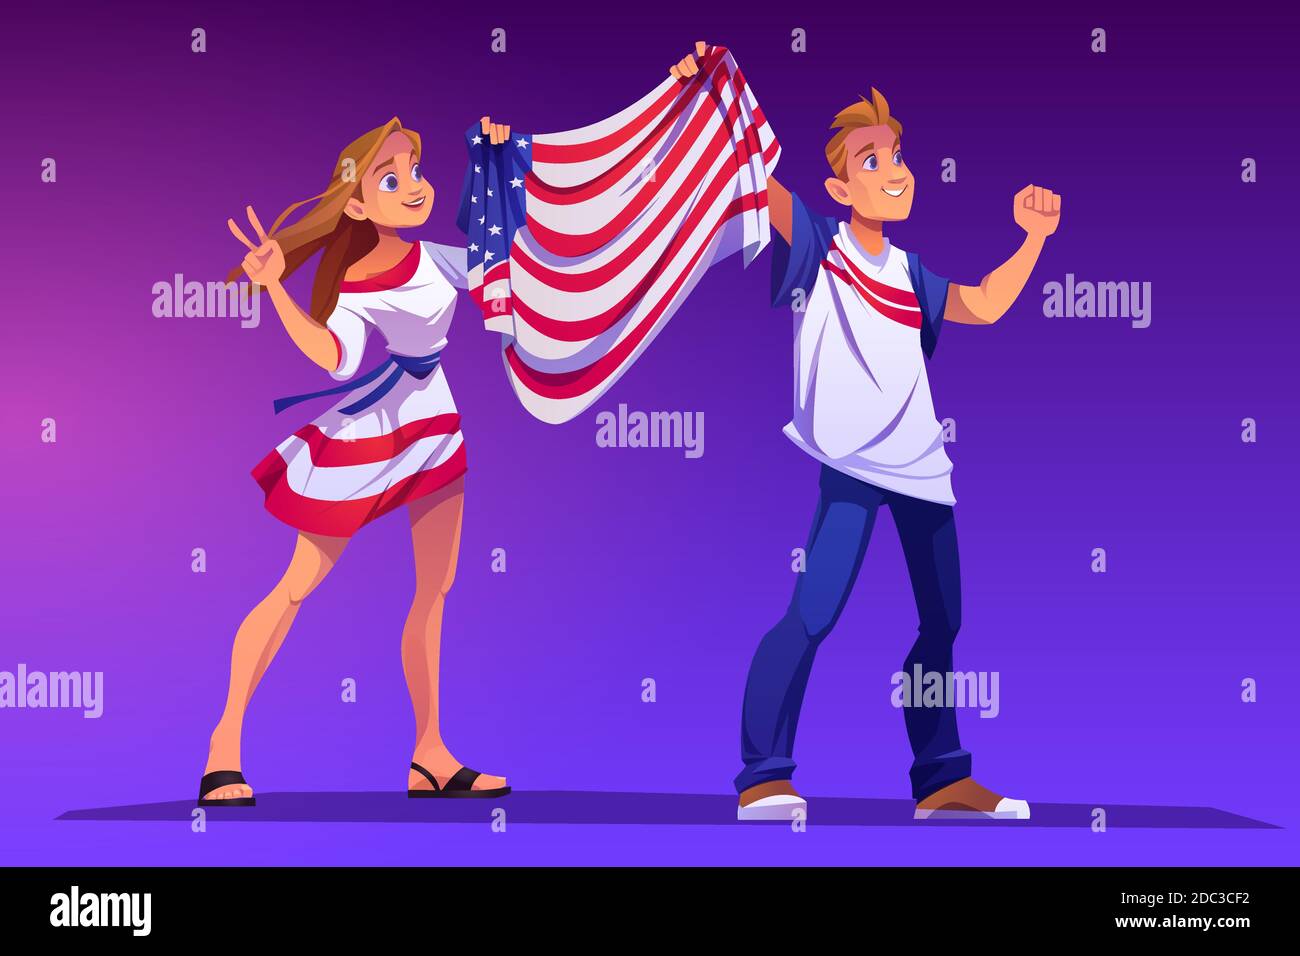 Persone che detengono la bandiera degli Stati Uniti a manifestazioni, raduni politici o celebrazioni nazionali. Vettore cartoon illustrazione di uomo e donna con bandiera degli Stati Uniti d'America. Attivisti patriottici americani Illustrazione Vettoriale